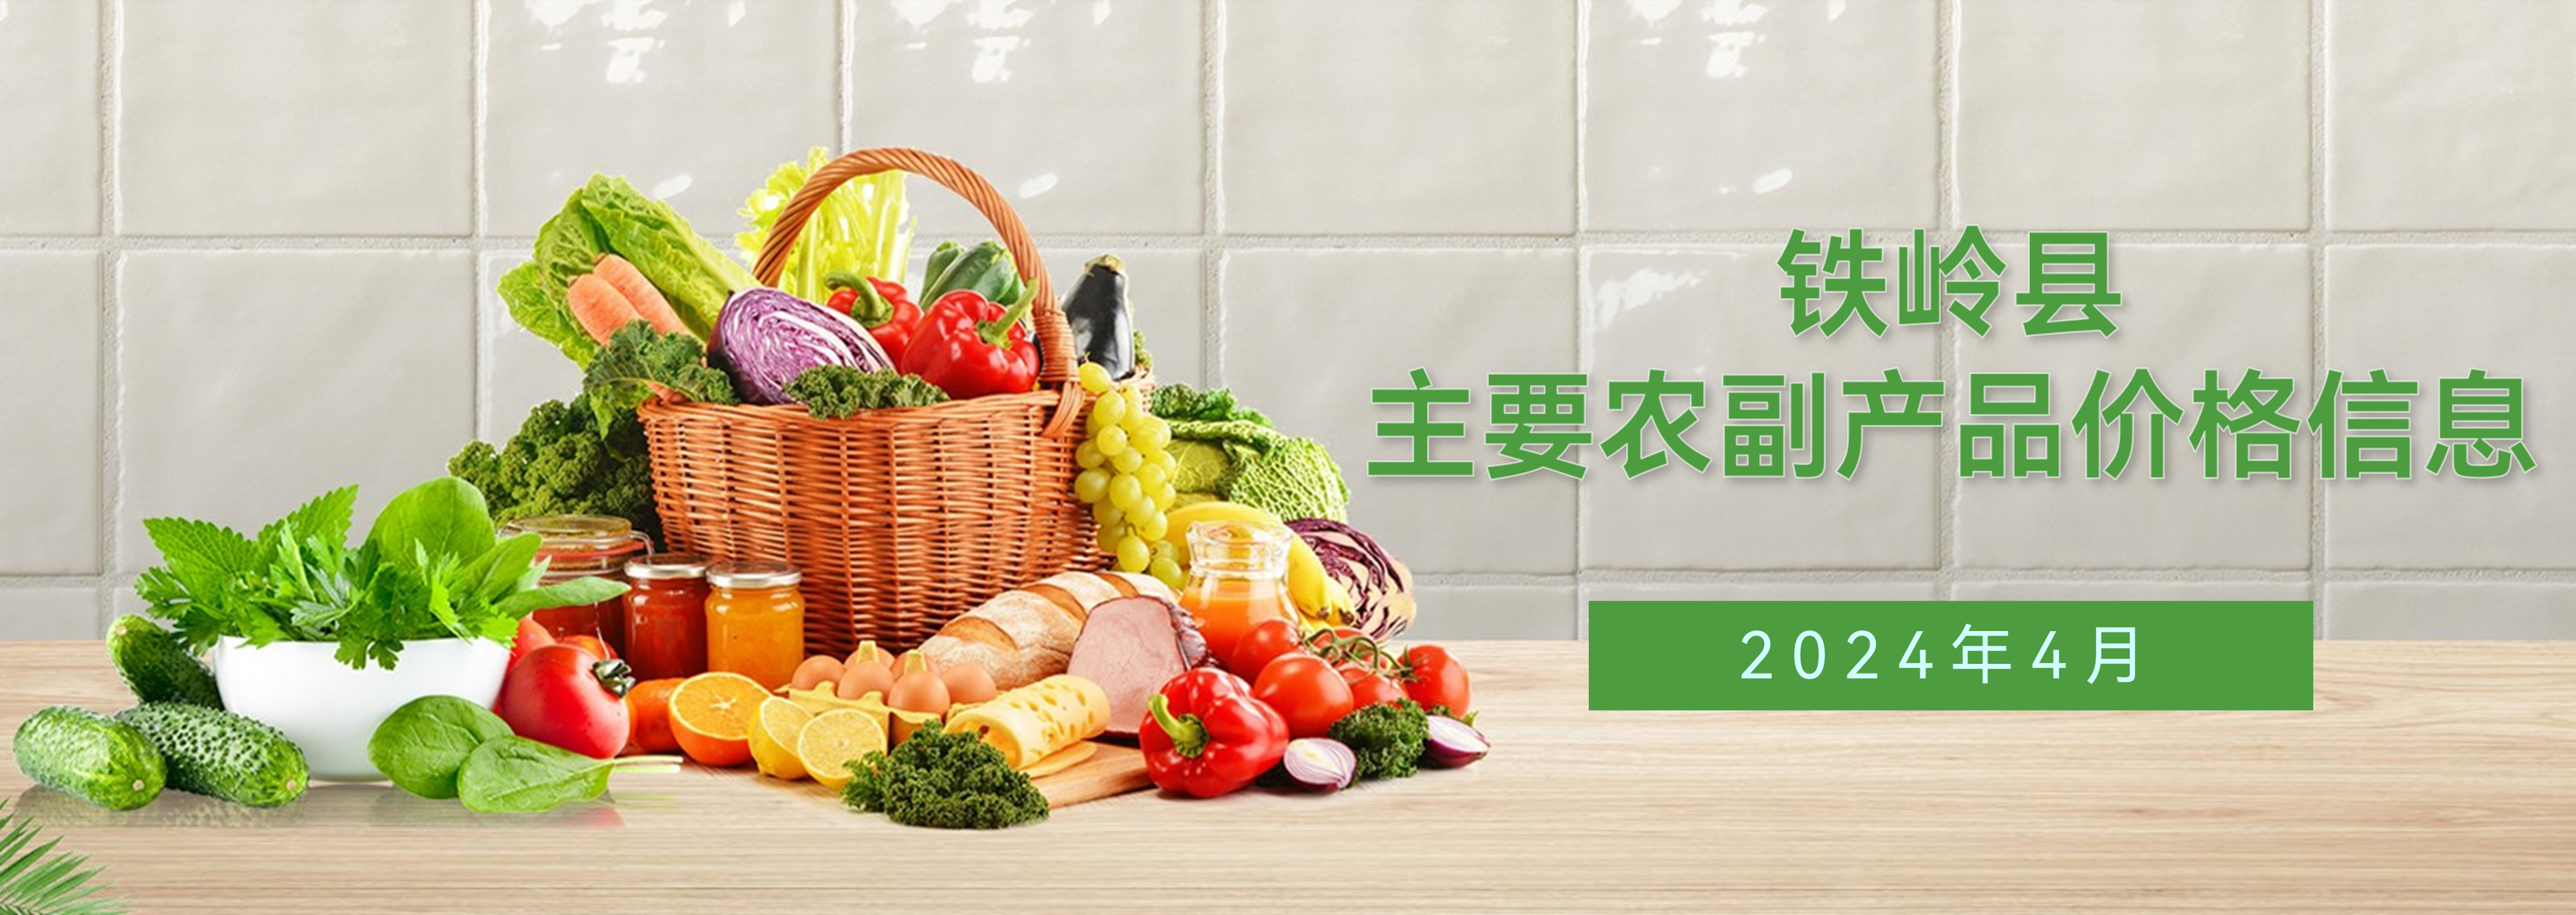 铁岭县2024年4月主要农副产品价格信息